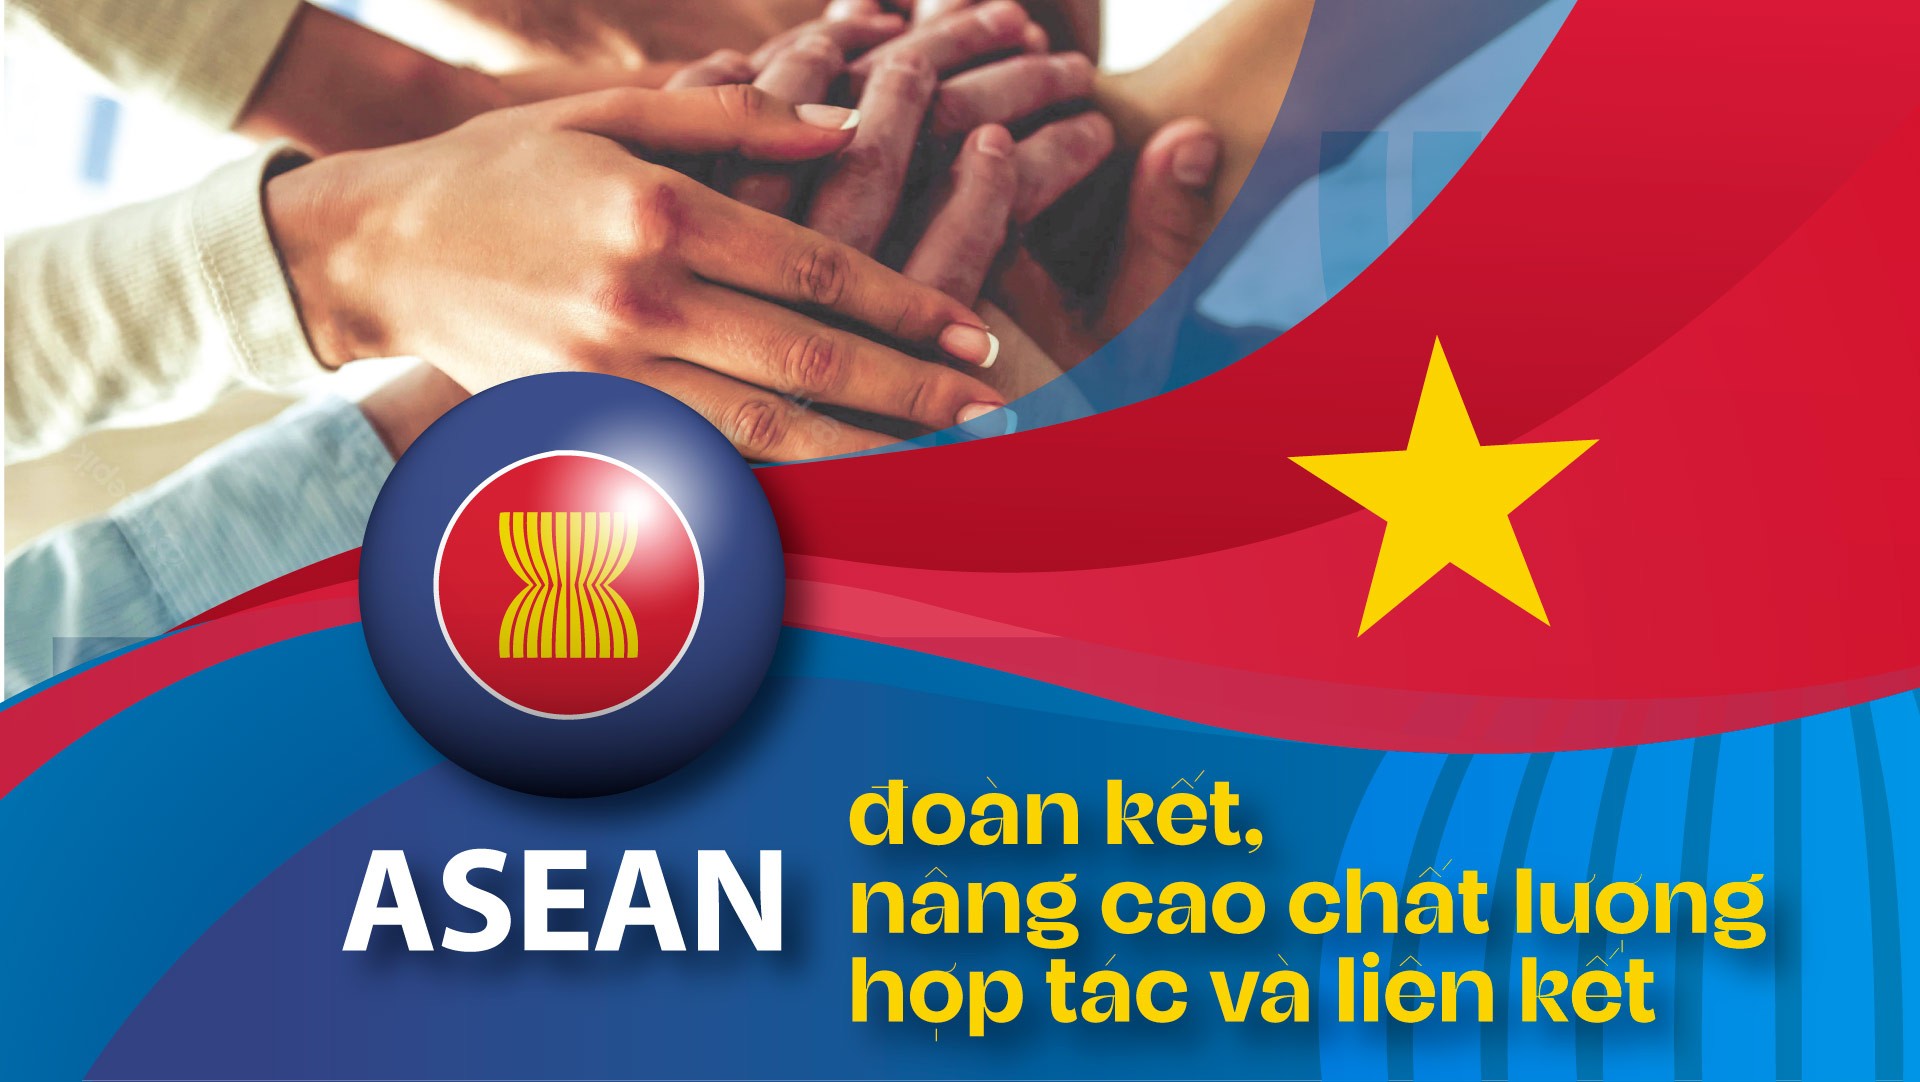 ASEAN đoàn kết, nâng cao chất lượng hợp tác và liên kết